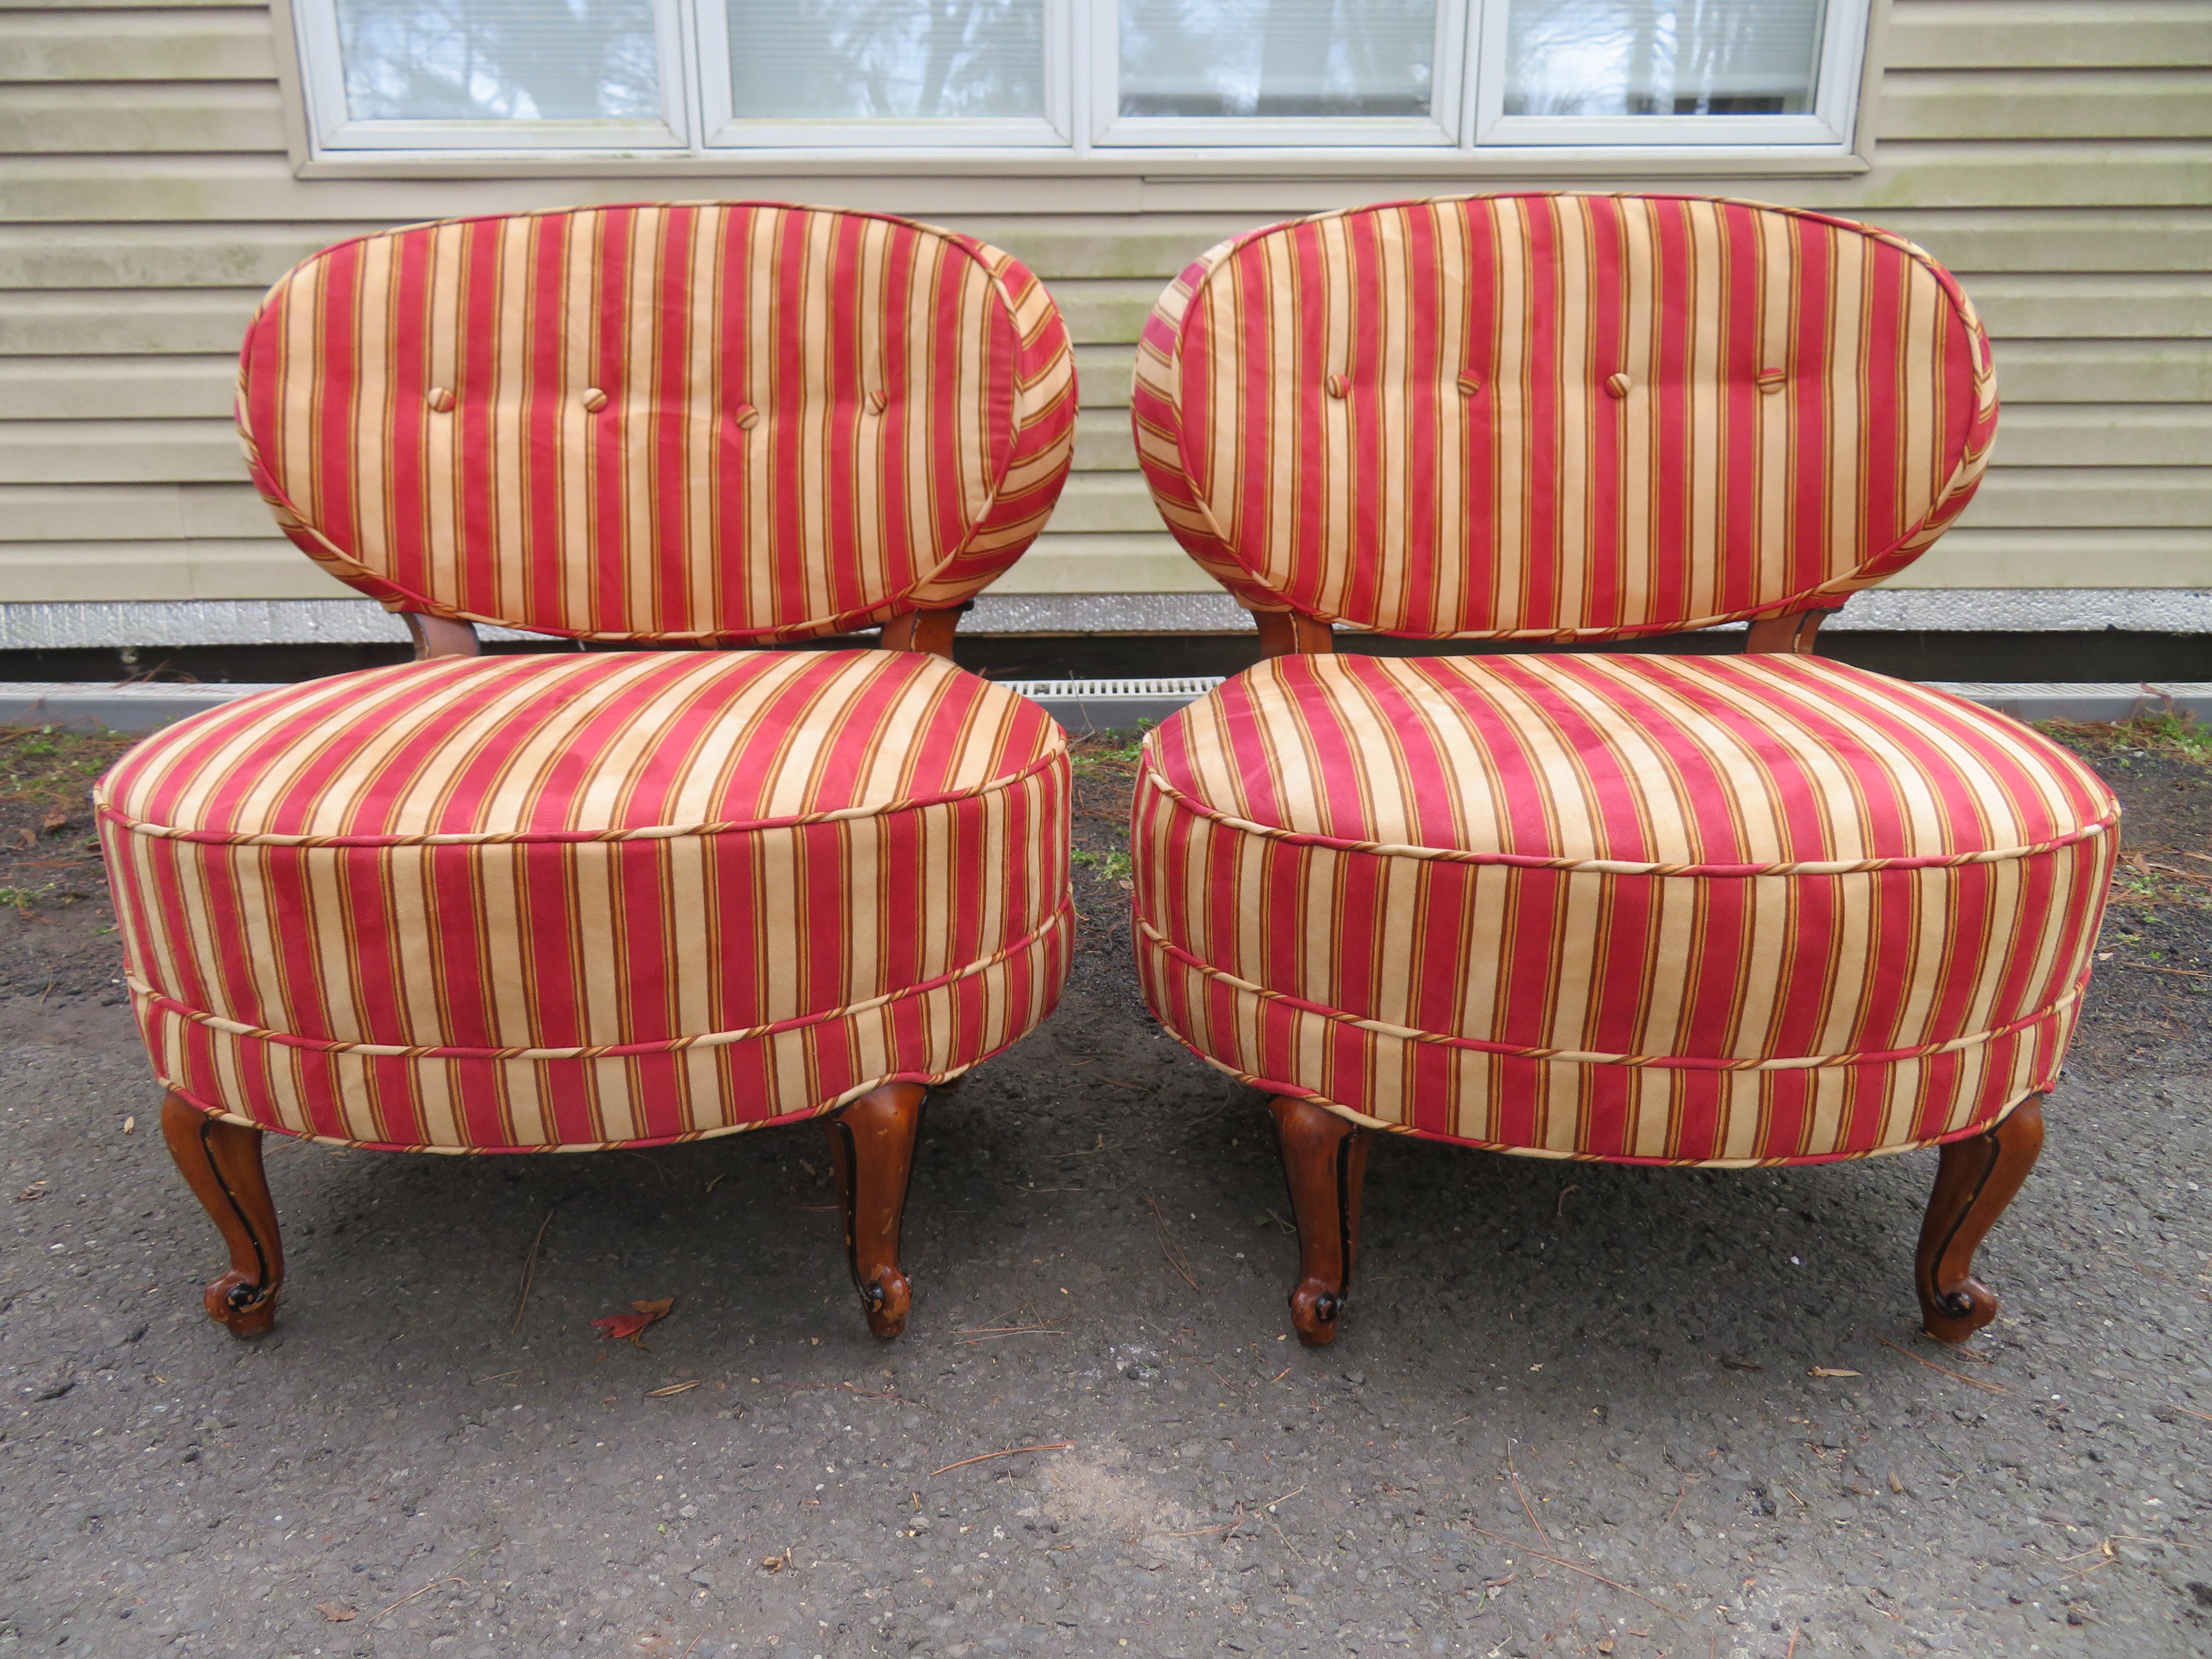 Schönes Paar Napoleon Billy Haines Stil Pantoffelstühle. Diese Stühle haben wunderschöne breite ovale Sitze und großzügig geschwungene Rückenlehnen. Beachten Sie auch die gut geschnitzten, kräftigen Cabriole-Beine rundherum - sehr stilvoll! Sie